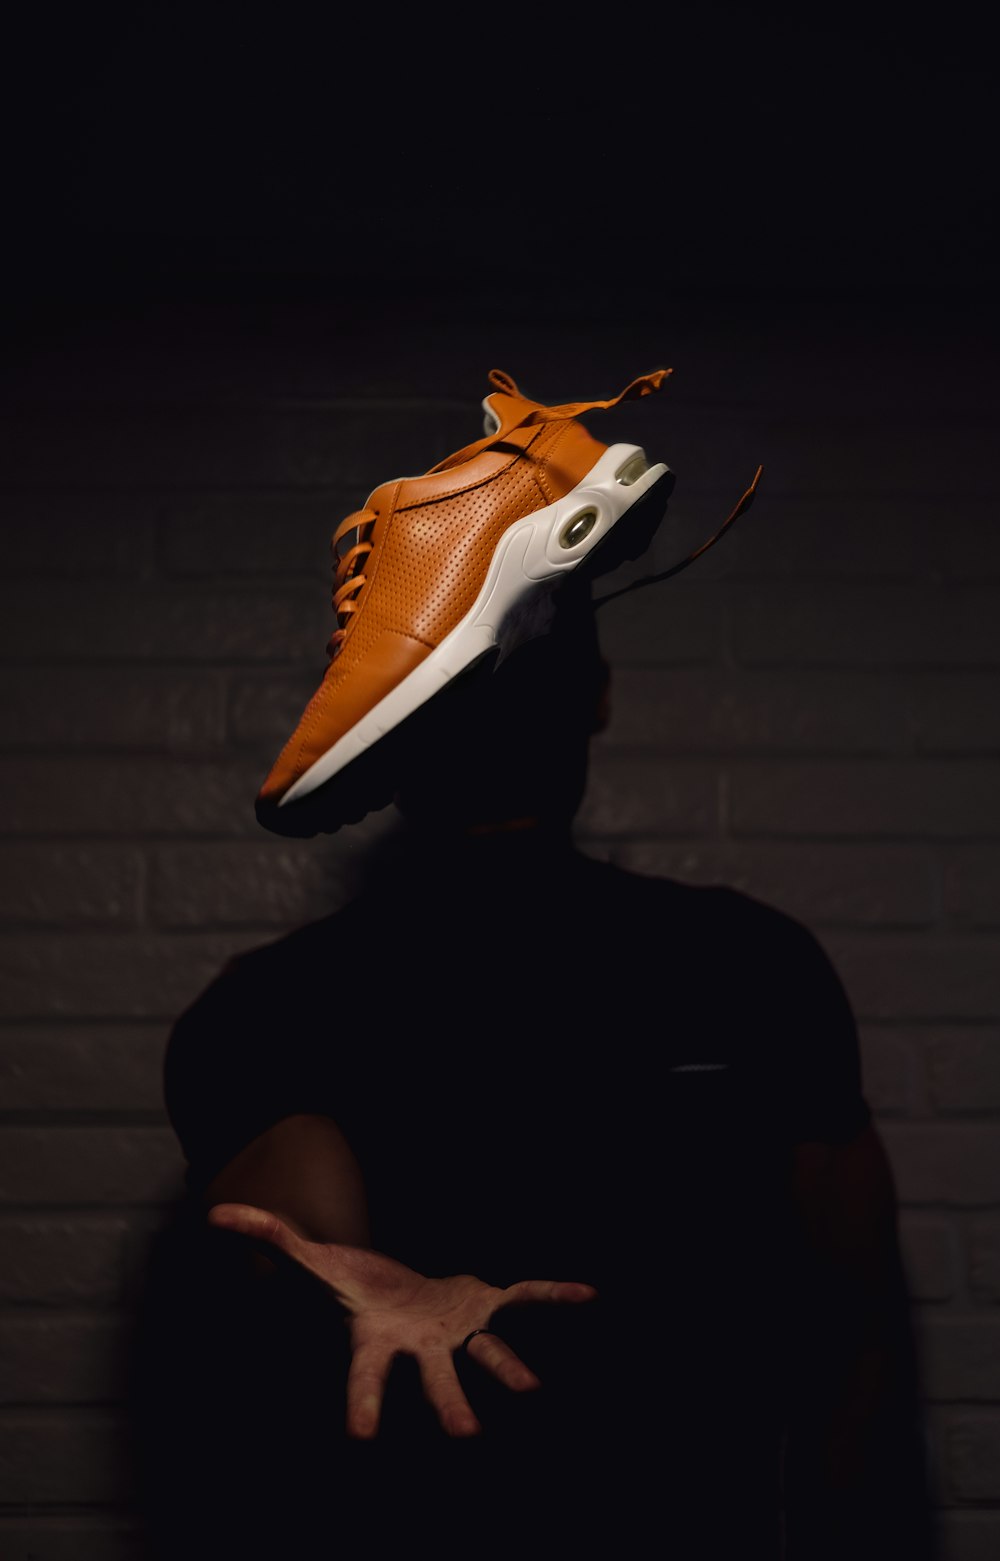 Persona che indossa scarpe da basket Nike arancioni e bianche